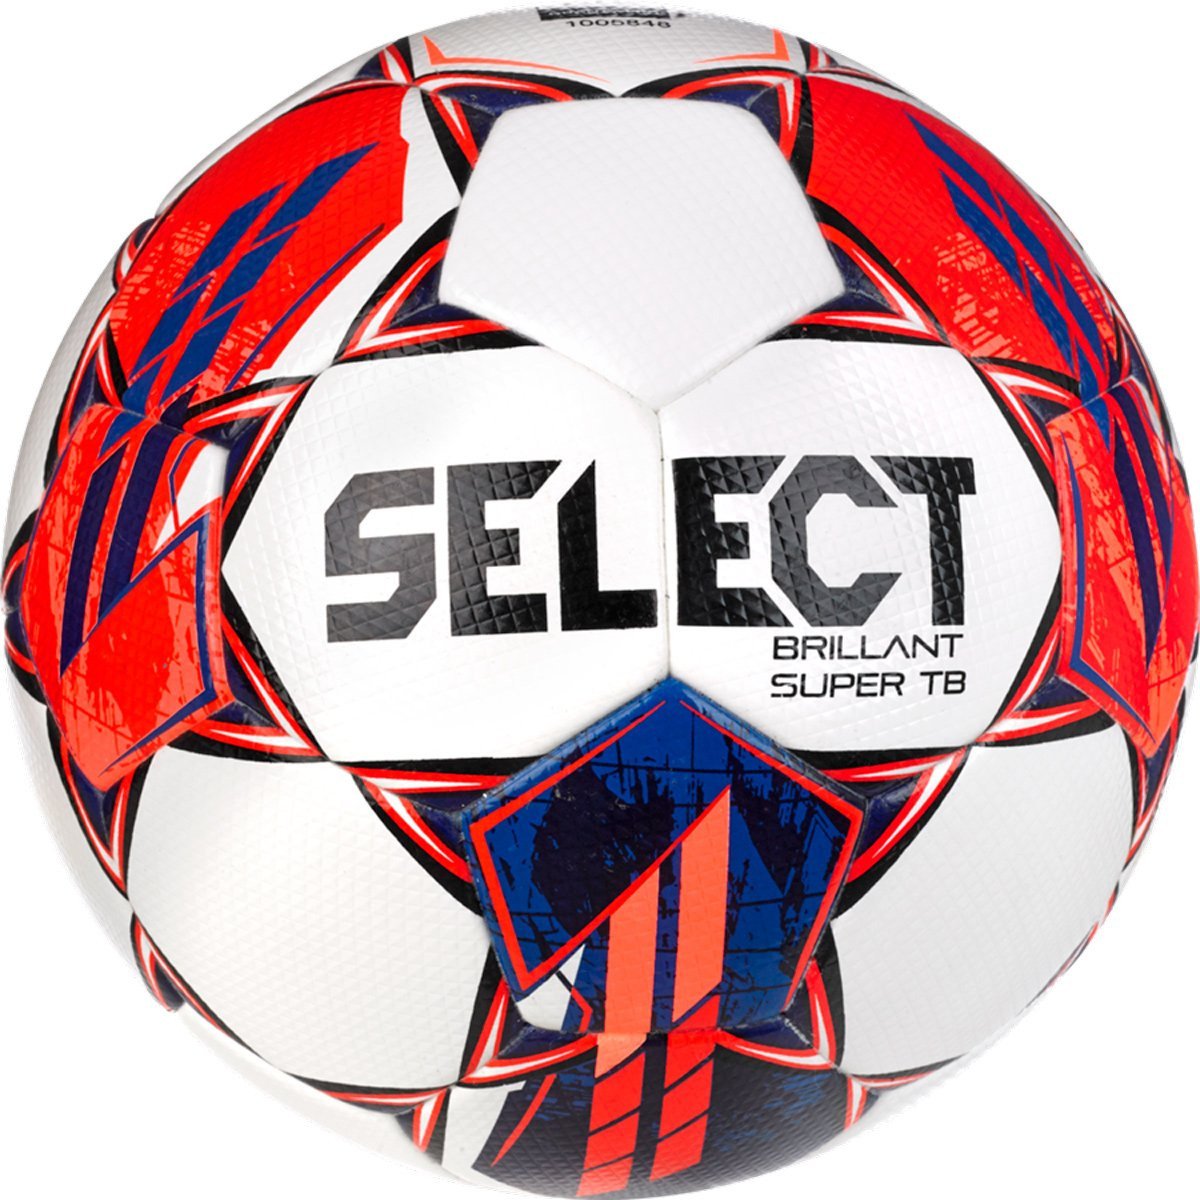 SELECT Brillant Super TB Version 23 Fodbold